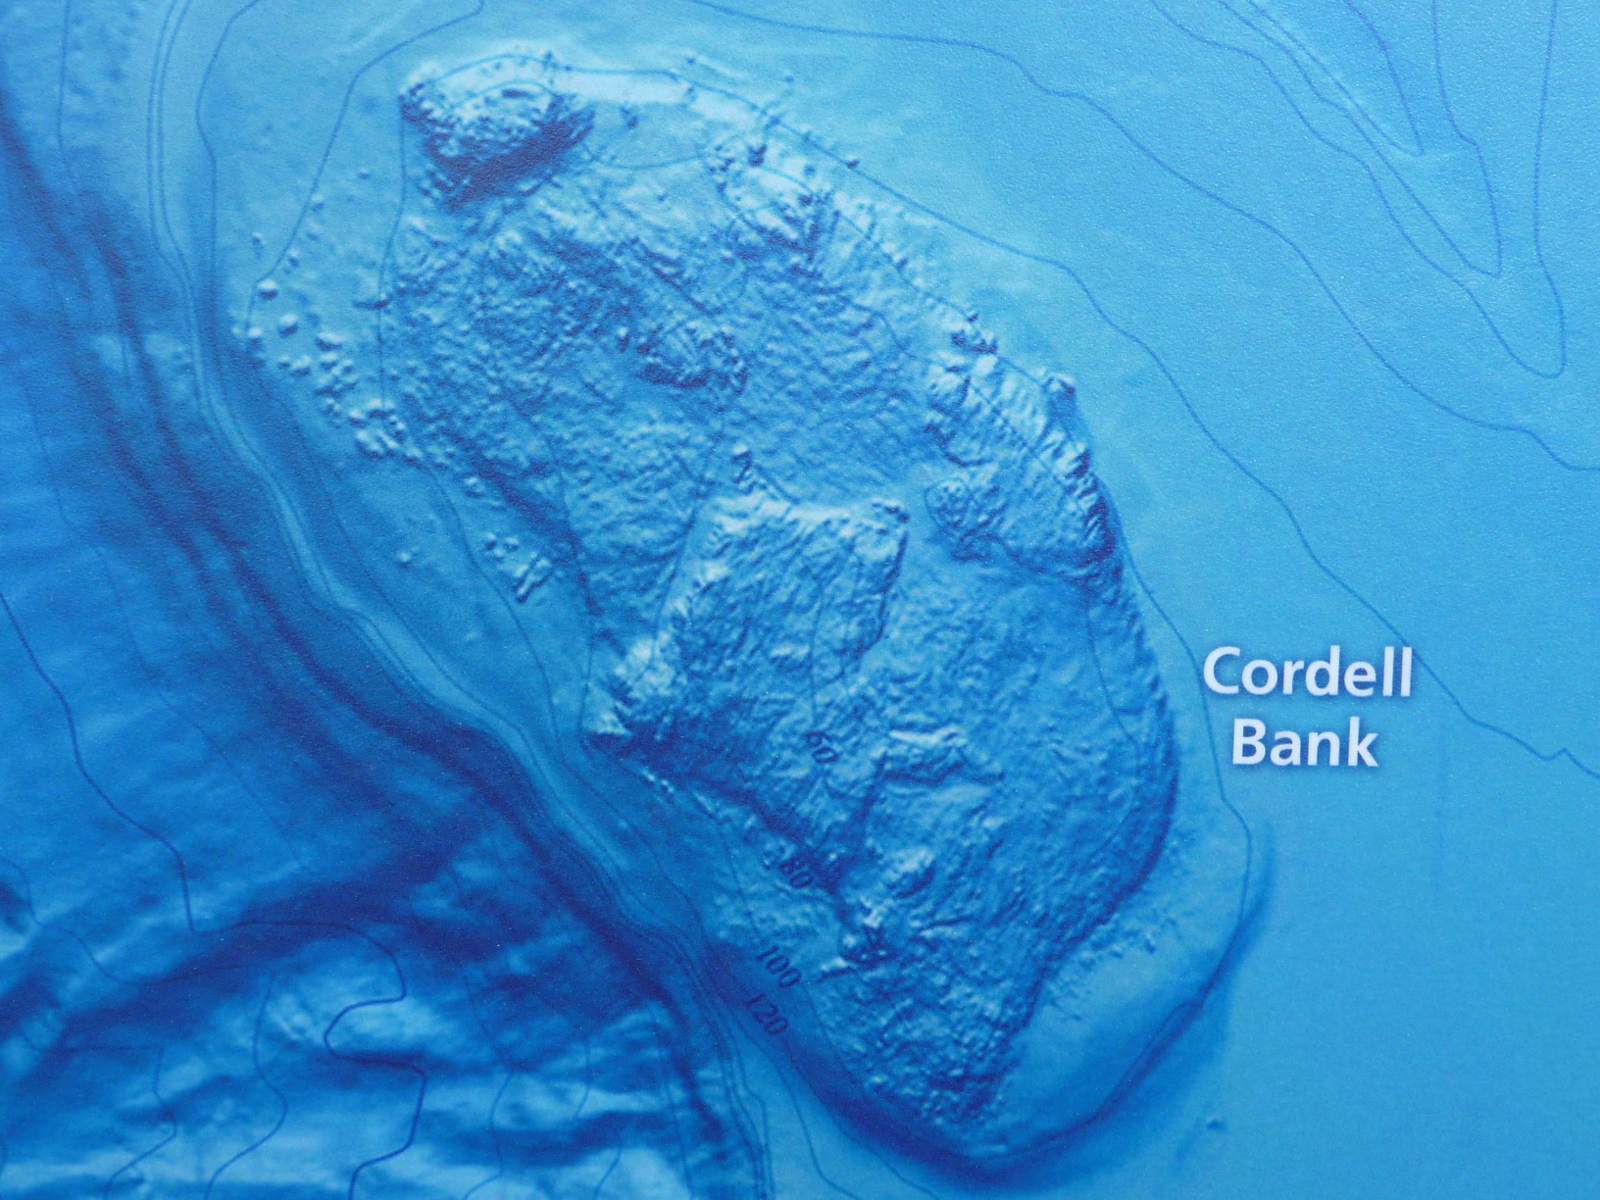 Cordell Bank